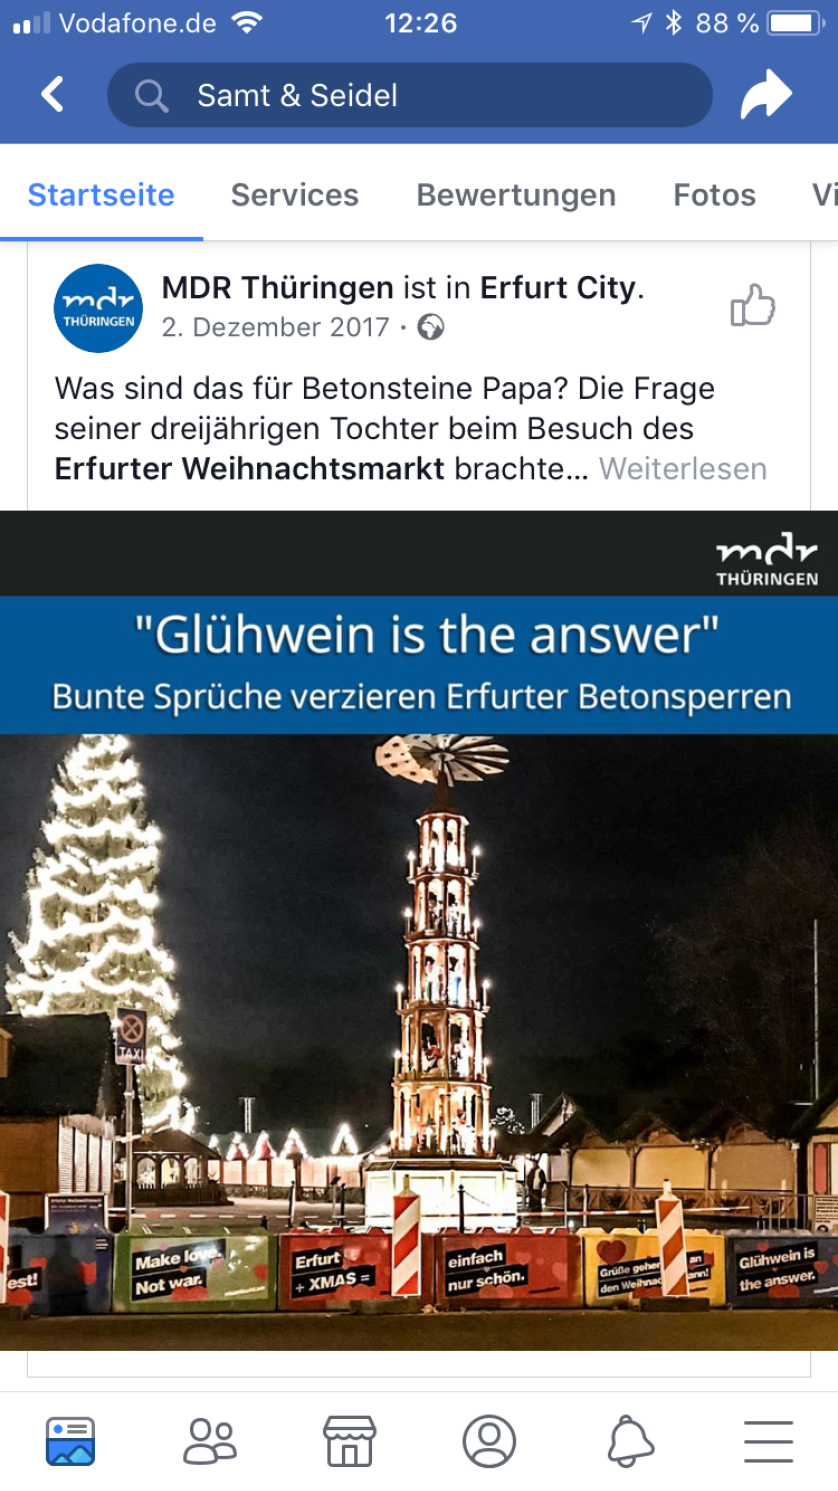 Samt&Seidel_Referenz_Advertainment_Weihnachtsmarkt_16